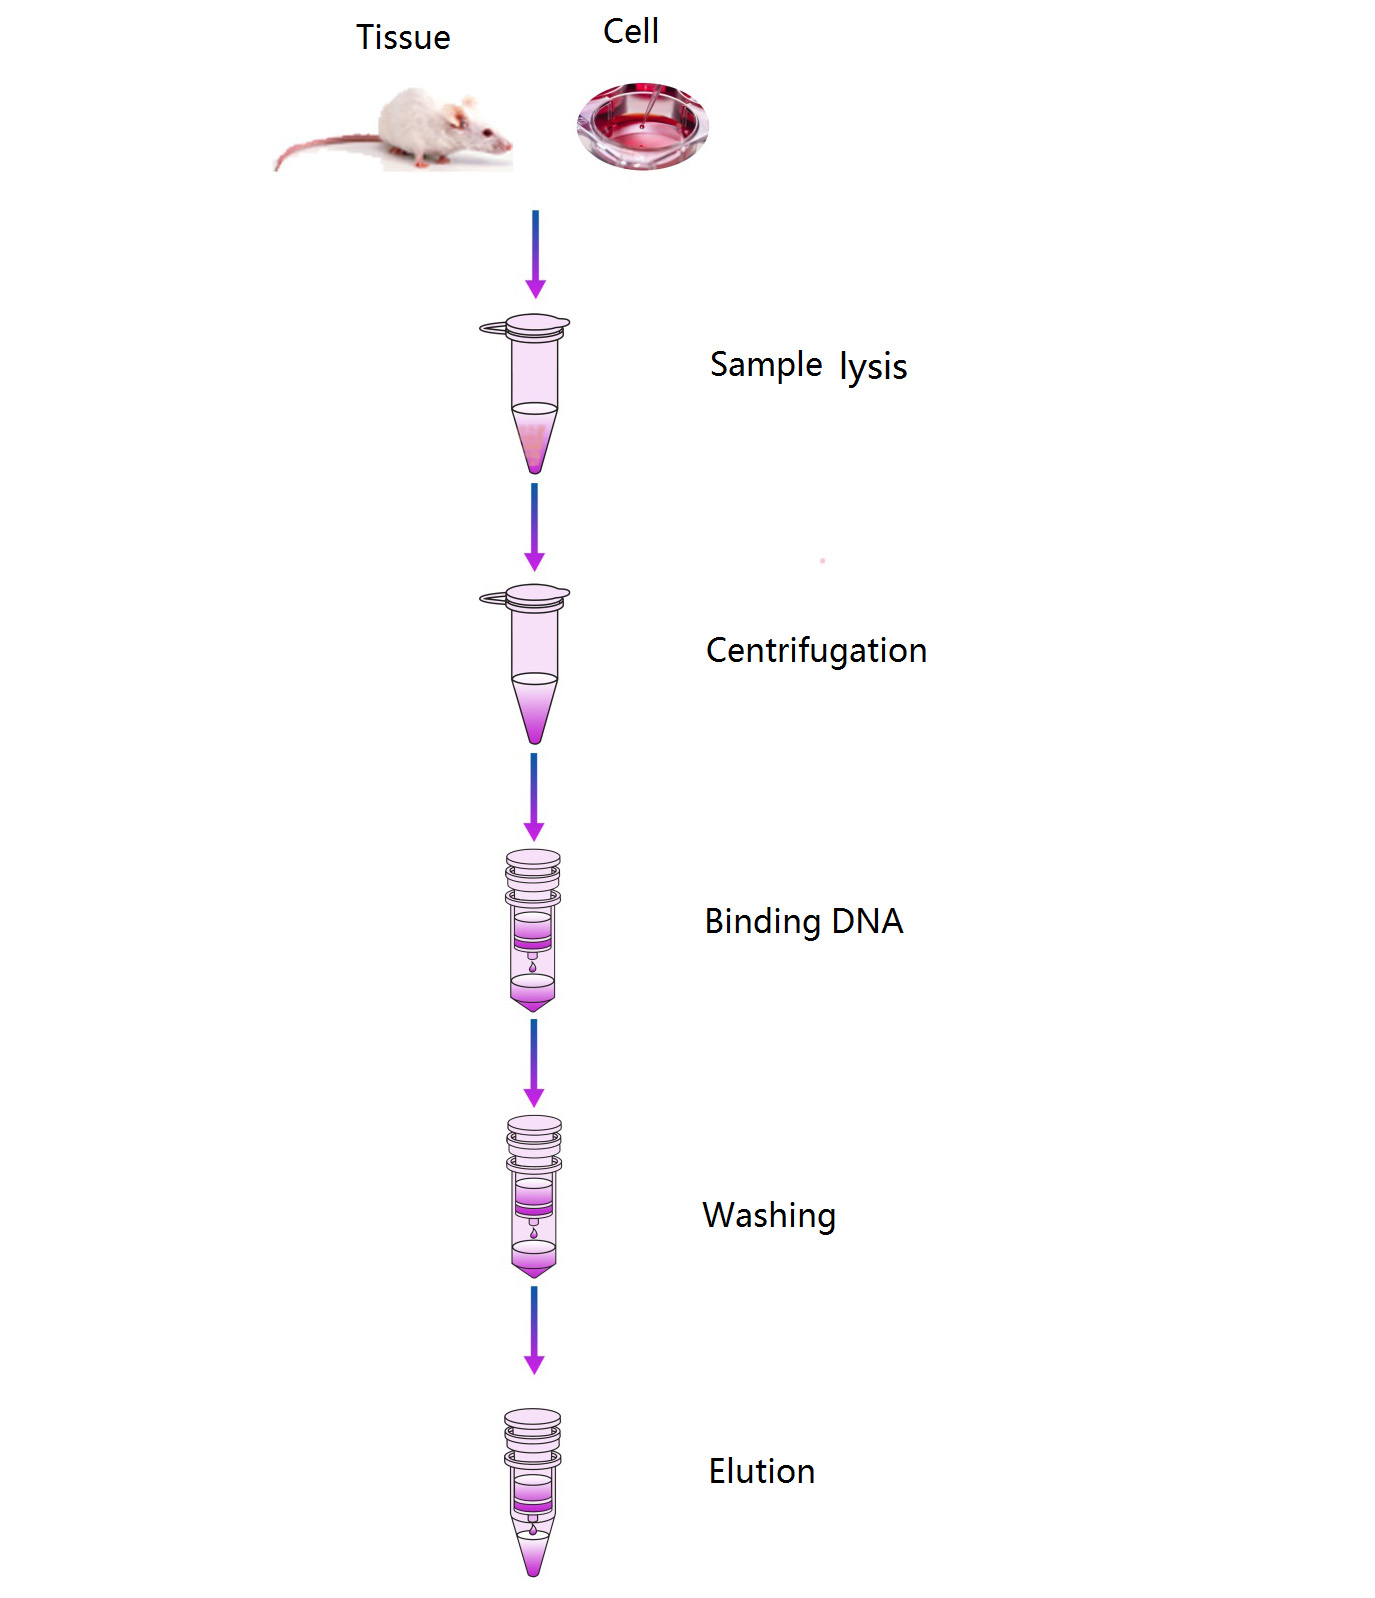 živalsko-tkivo-izolacija-DNK-preprost potek dela